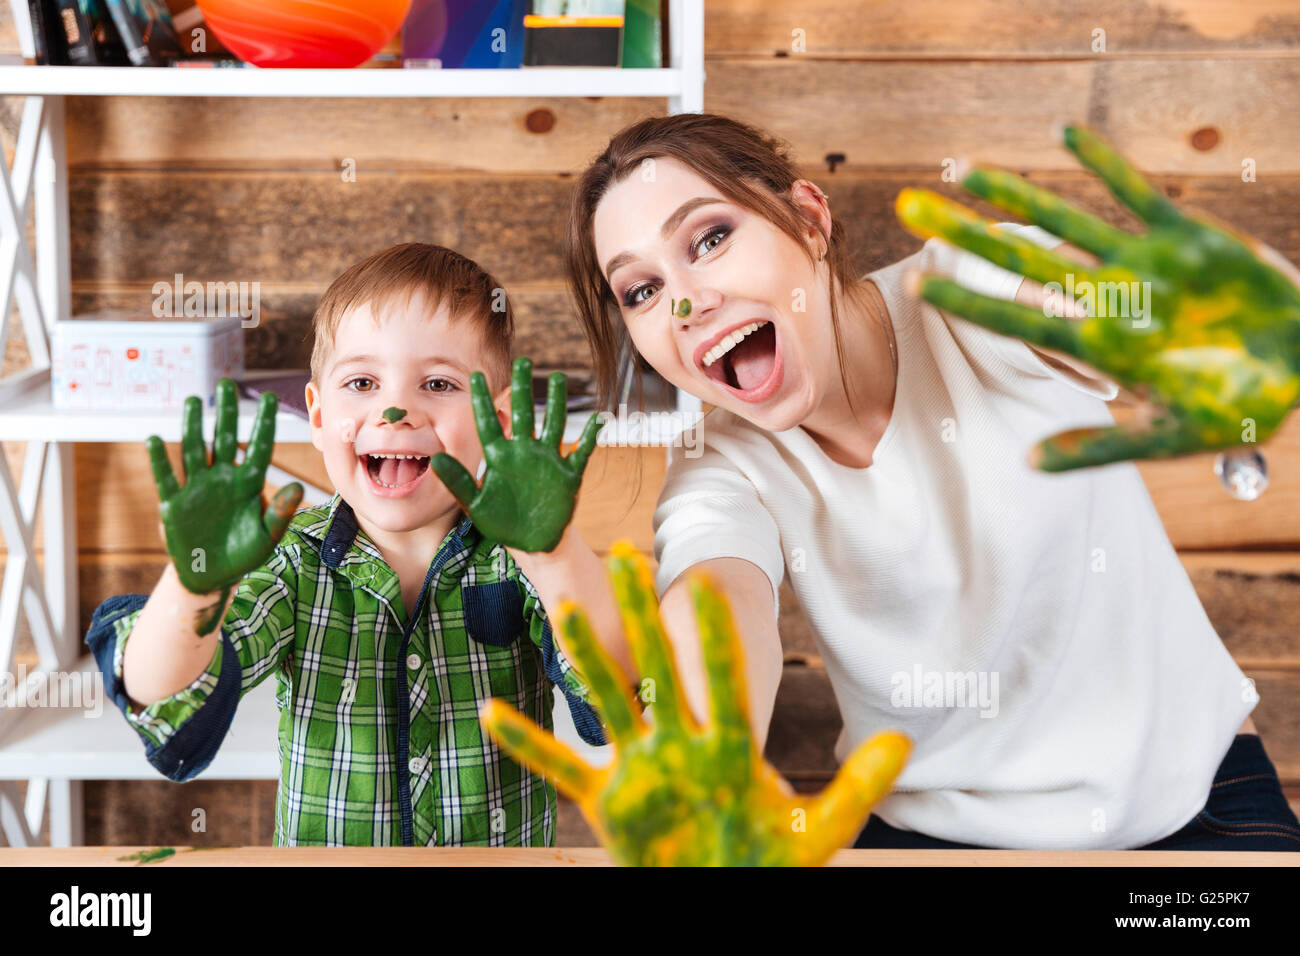 Lächelnd aufgeregt, kleinen Jungen und seiner Mutter zeigt Hände in bunten Farben bemalt und lachen Stockfoto